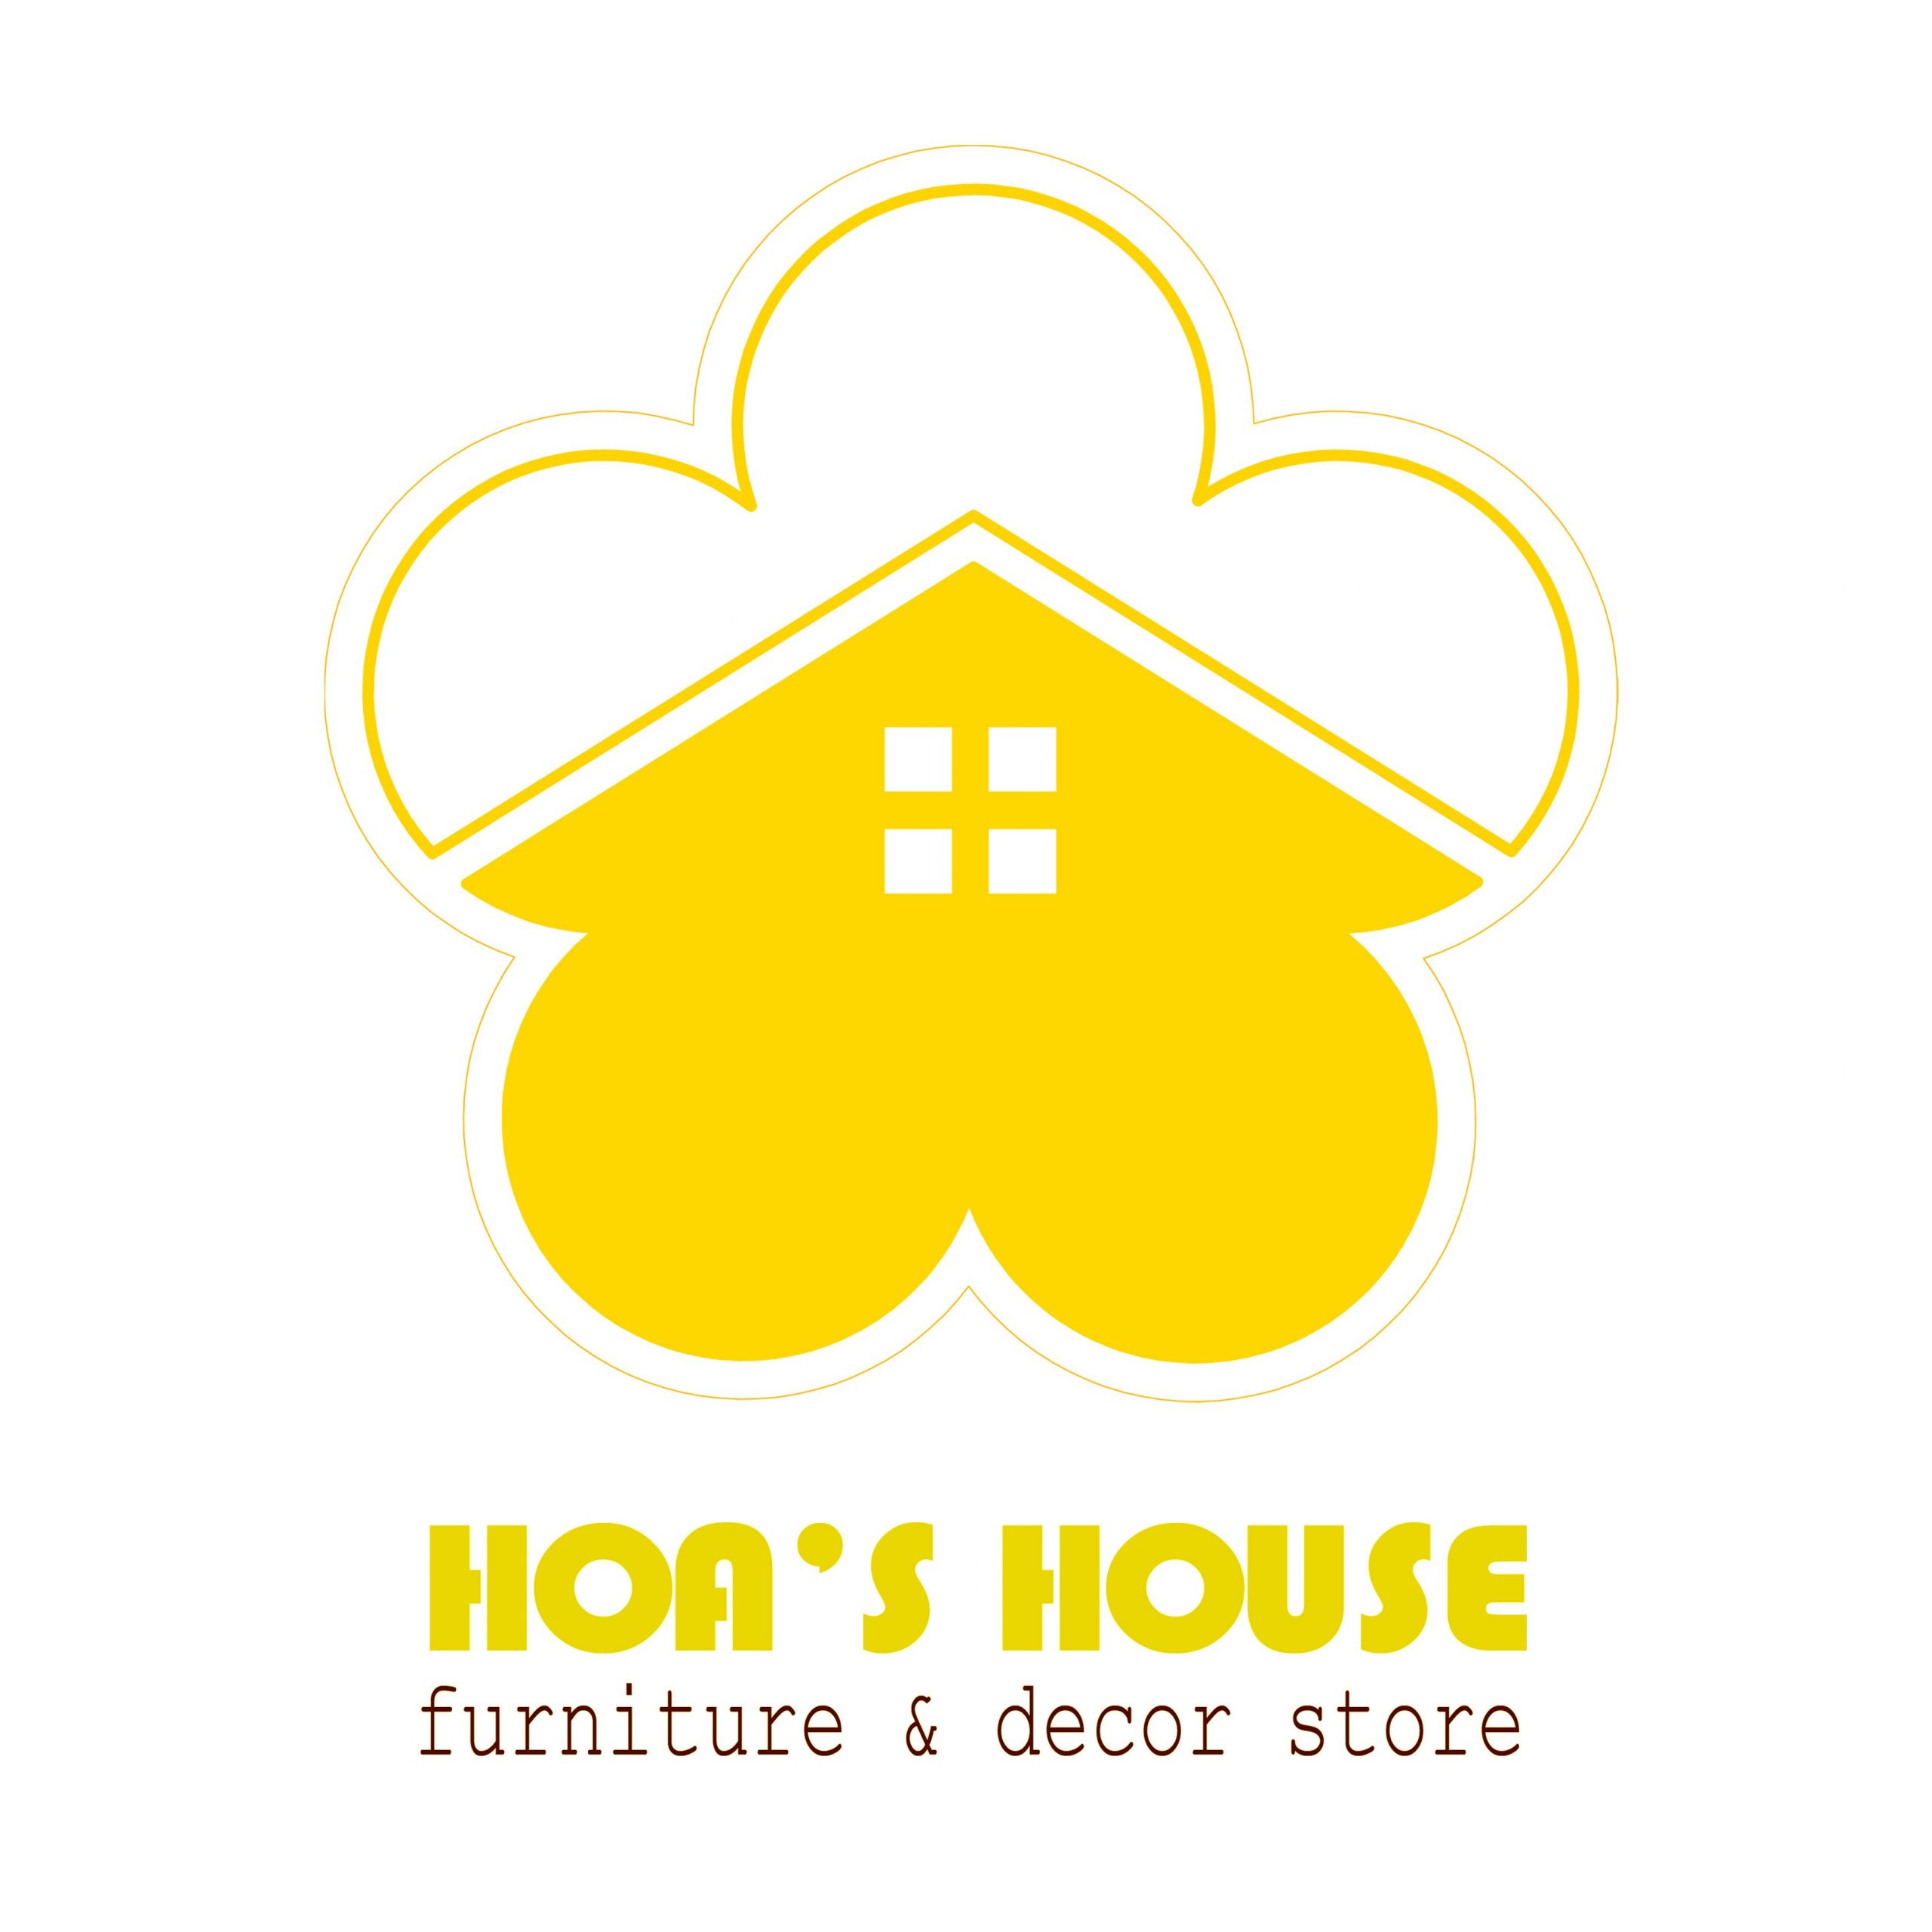 Hoa's House